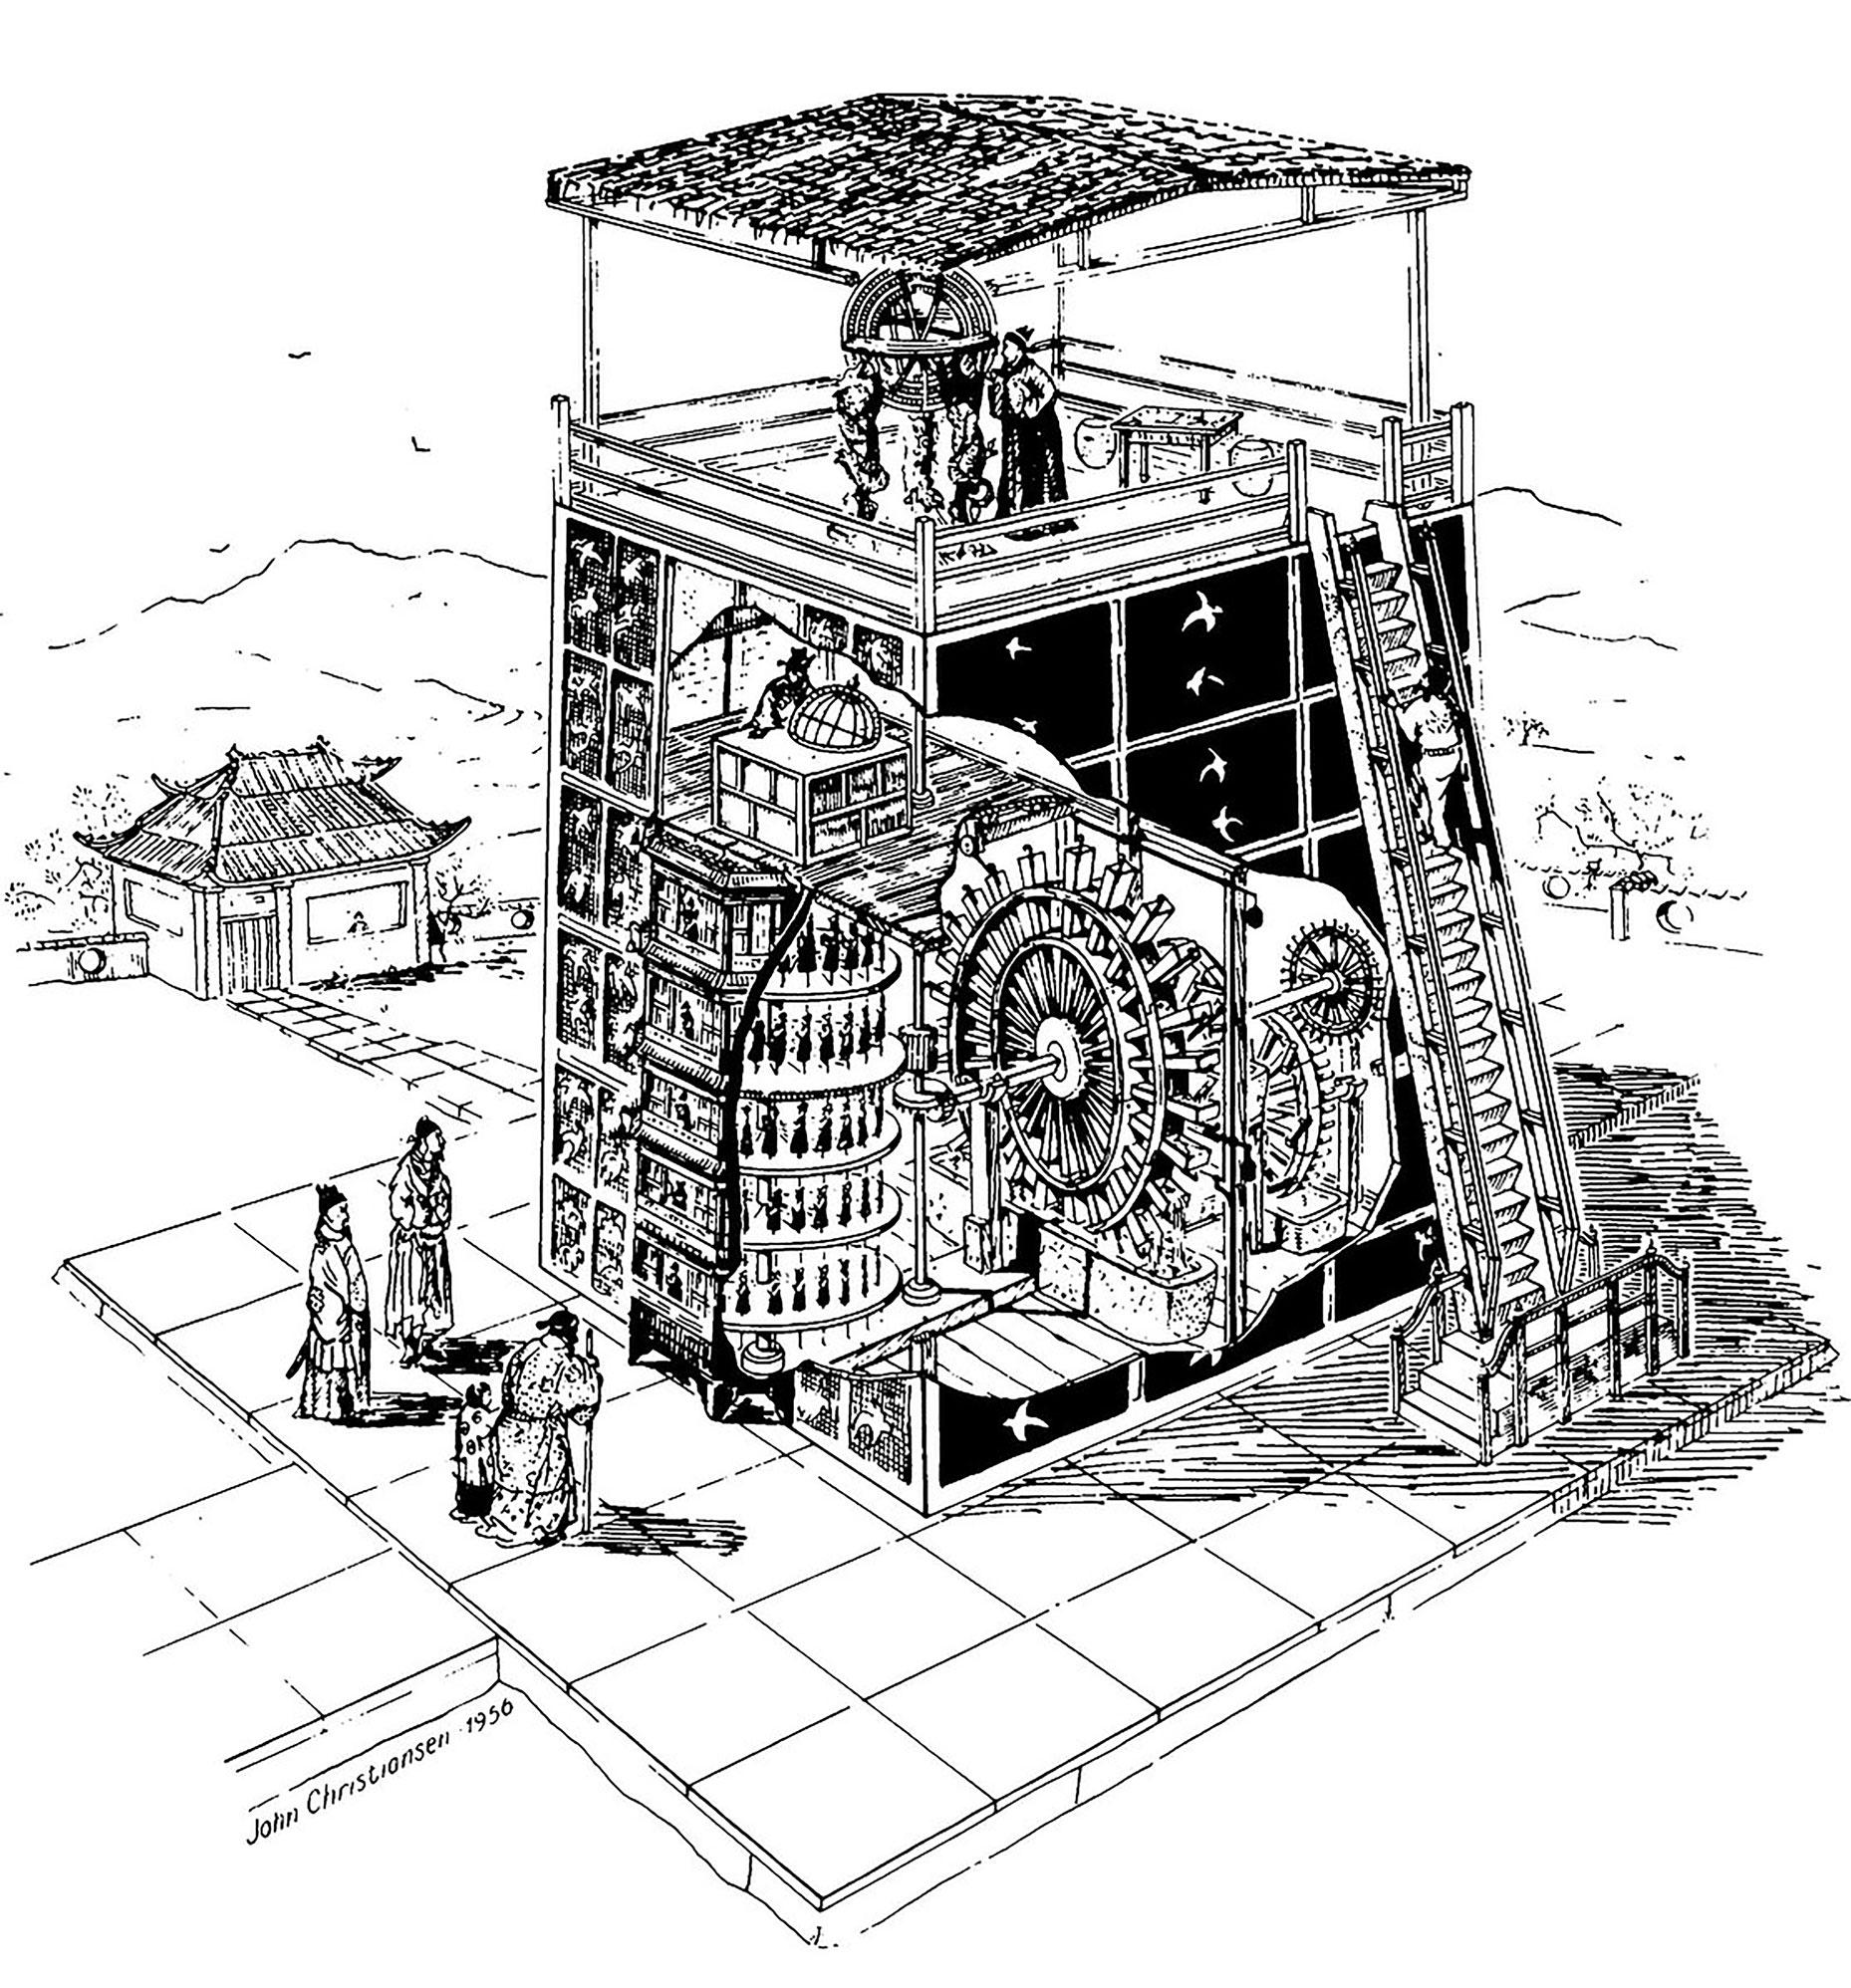 Башня с астрономическими часами Су Суна в Кайфэне, 1090 год (рисунок Джона Кристиансена; опубликовано в Bulletin — United States National Museum, 1877)